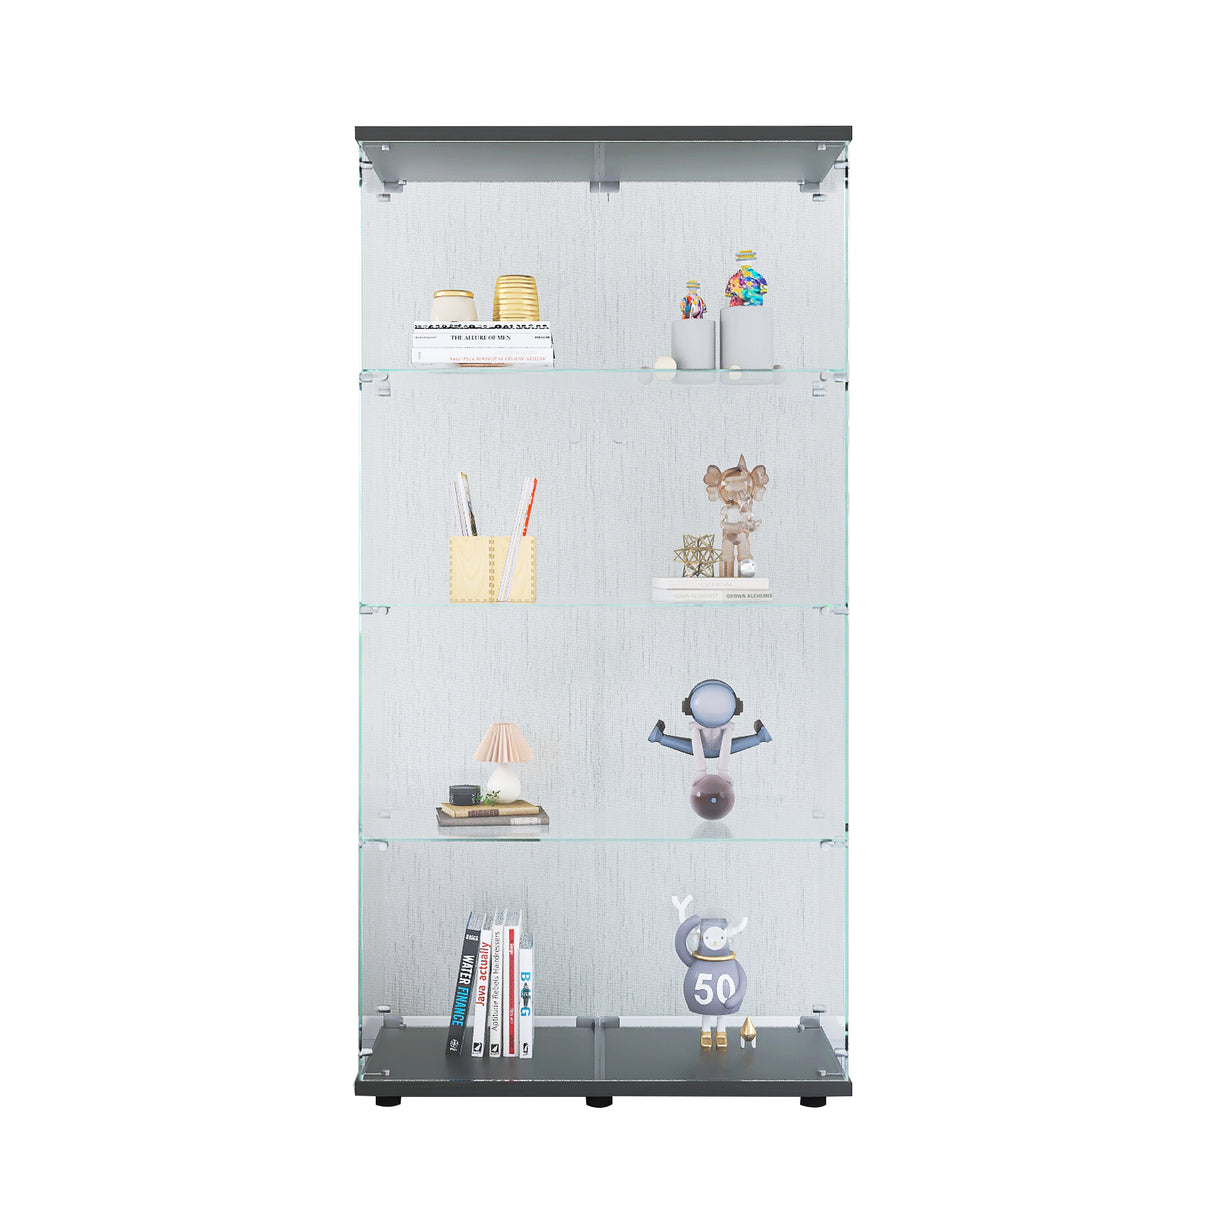 Two-door Glass Display Cabinet 4 Shelves with Door, Floor Standing Curio Bookshelf for Living Room Bedroom Office,  64.7"*31.7"*14.3",Black Home Elegance USA